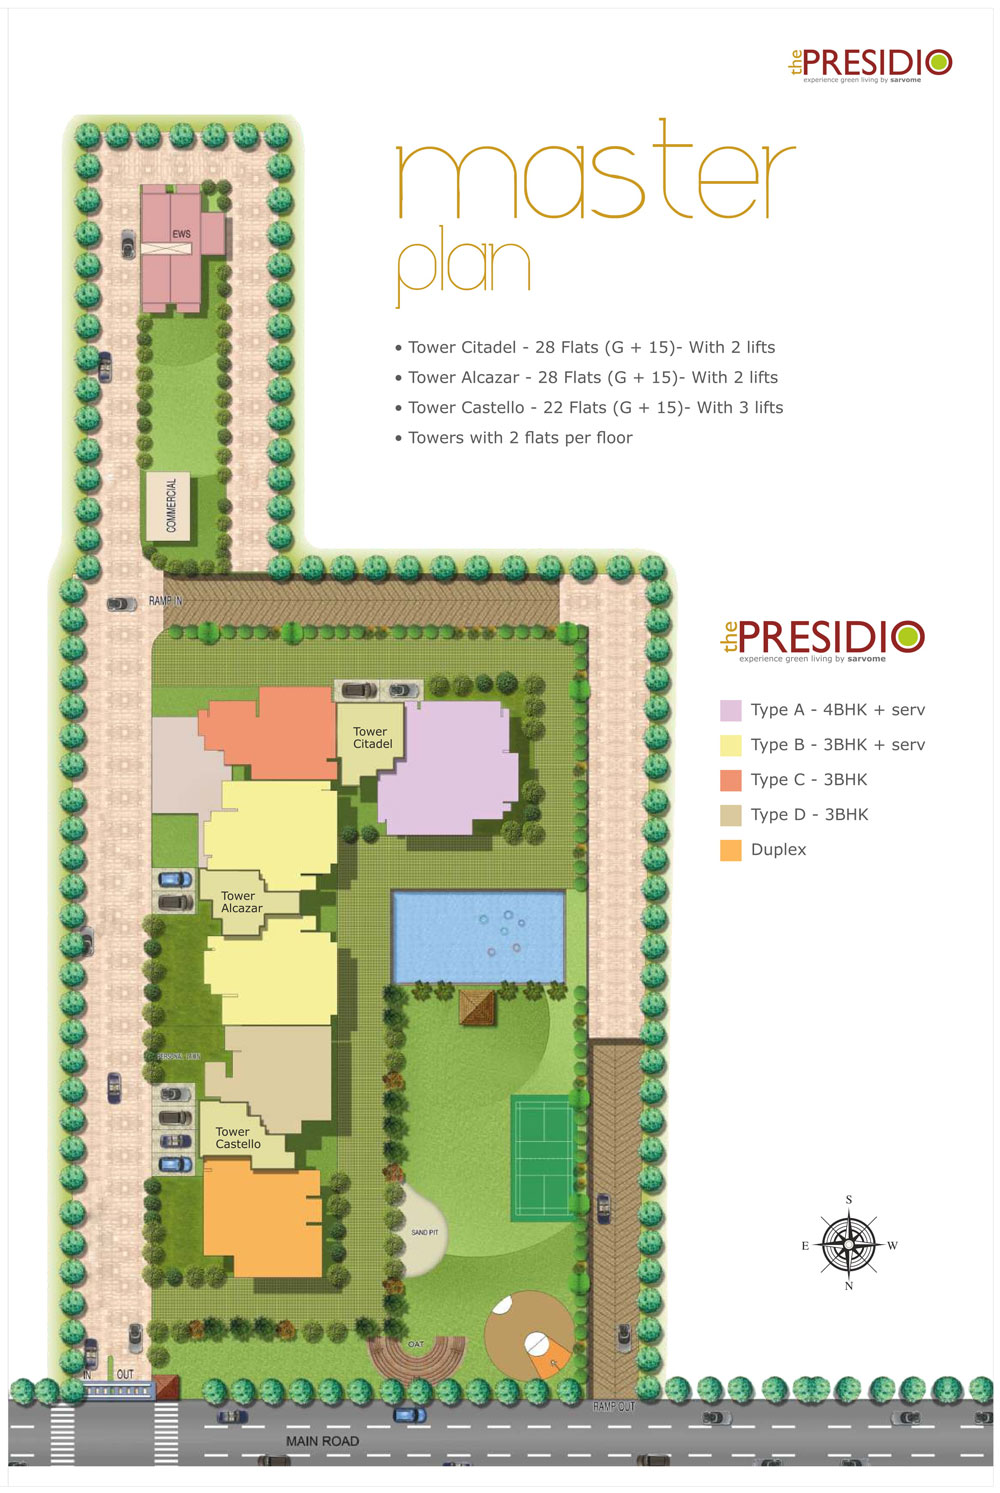 Sarvome The Presidio Master Plan